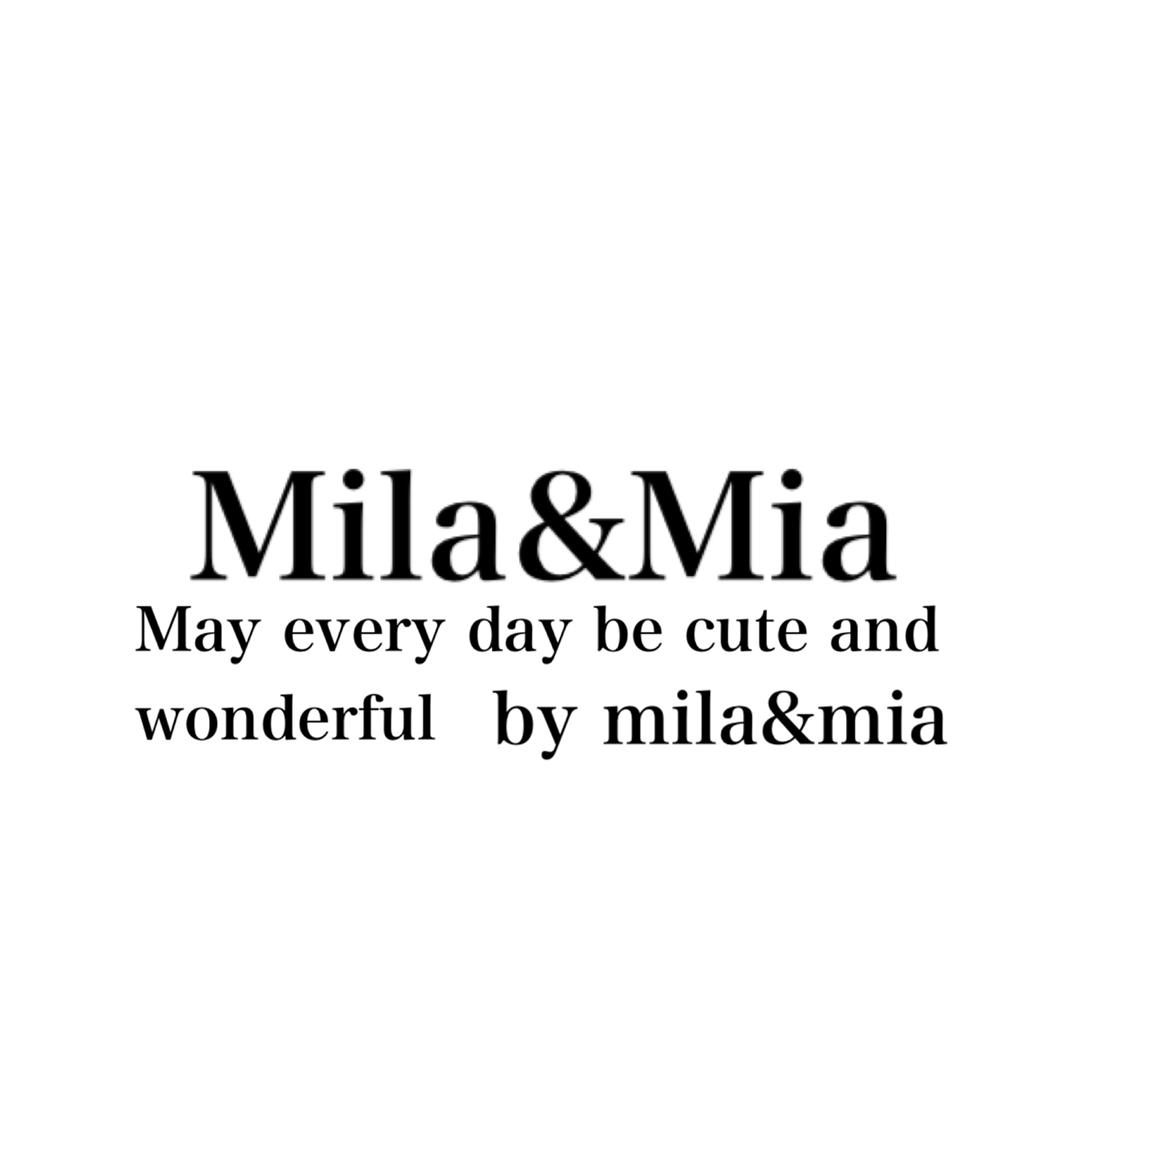 Mila&Mia